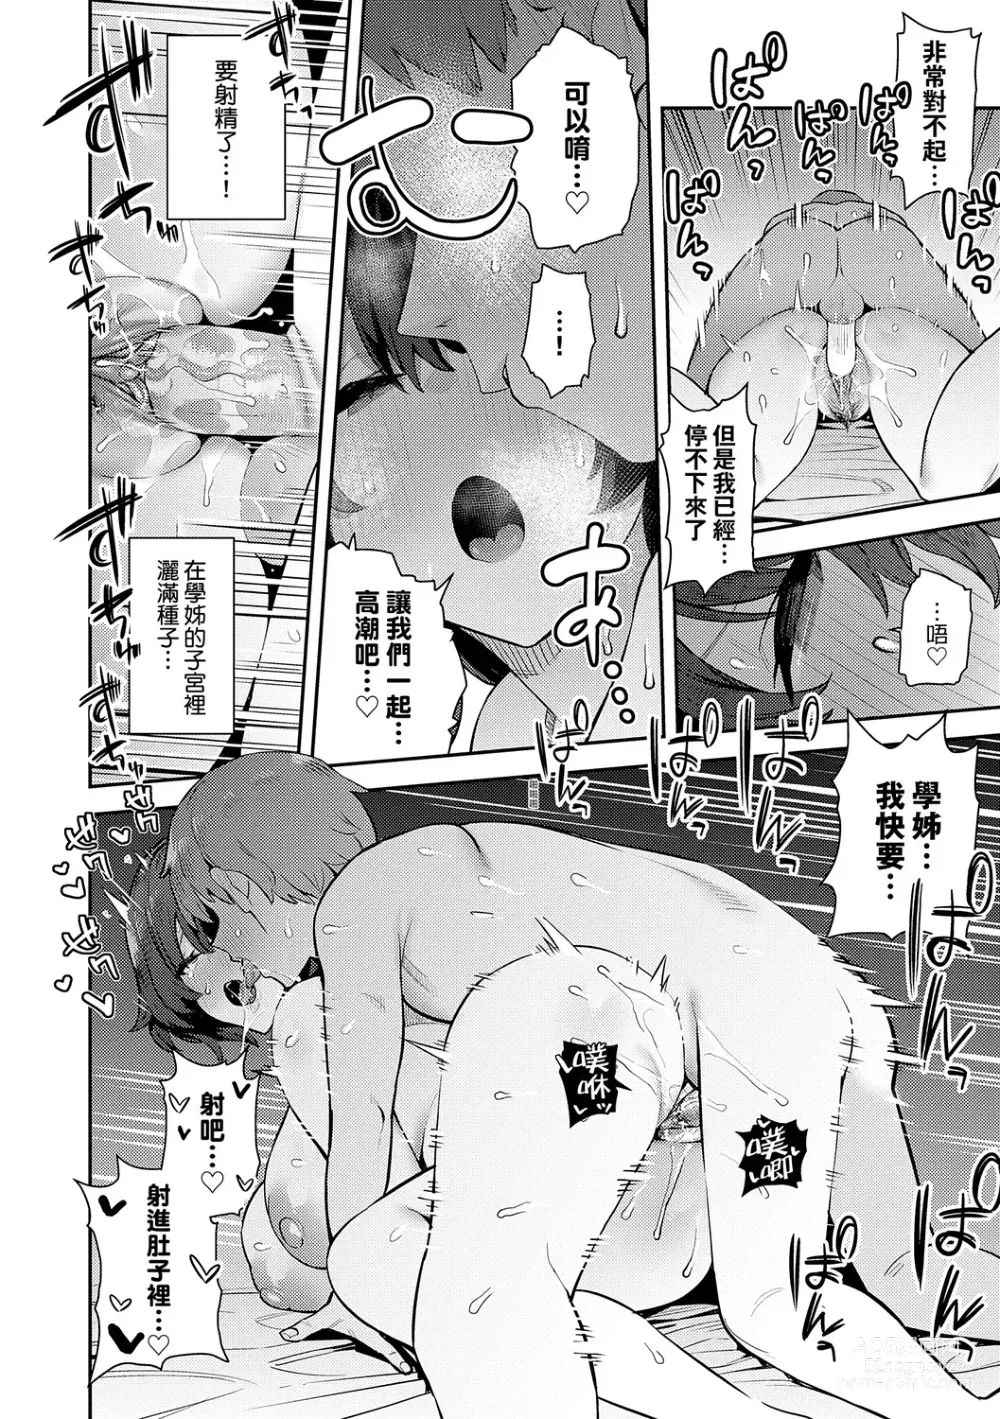 Page 246 of manga Seiyoku Tsuyo Tsuyo (decensored)